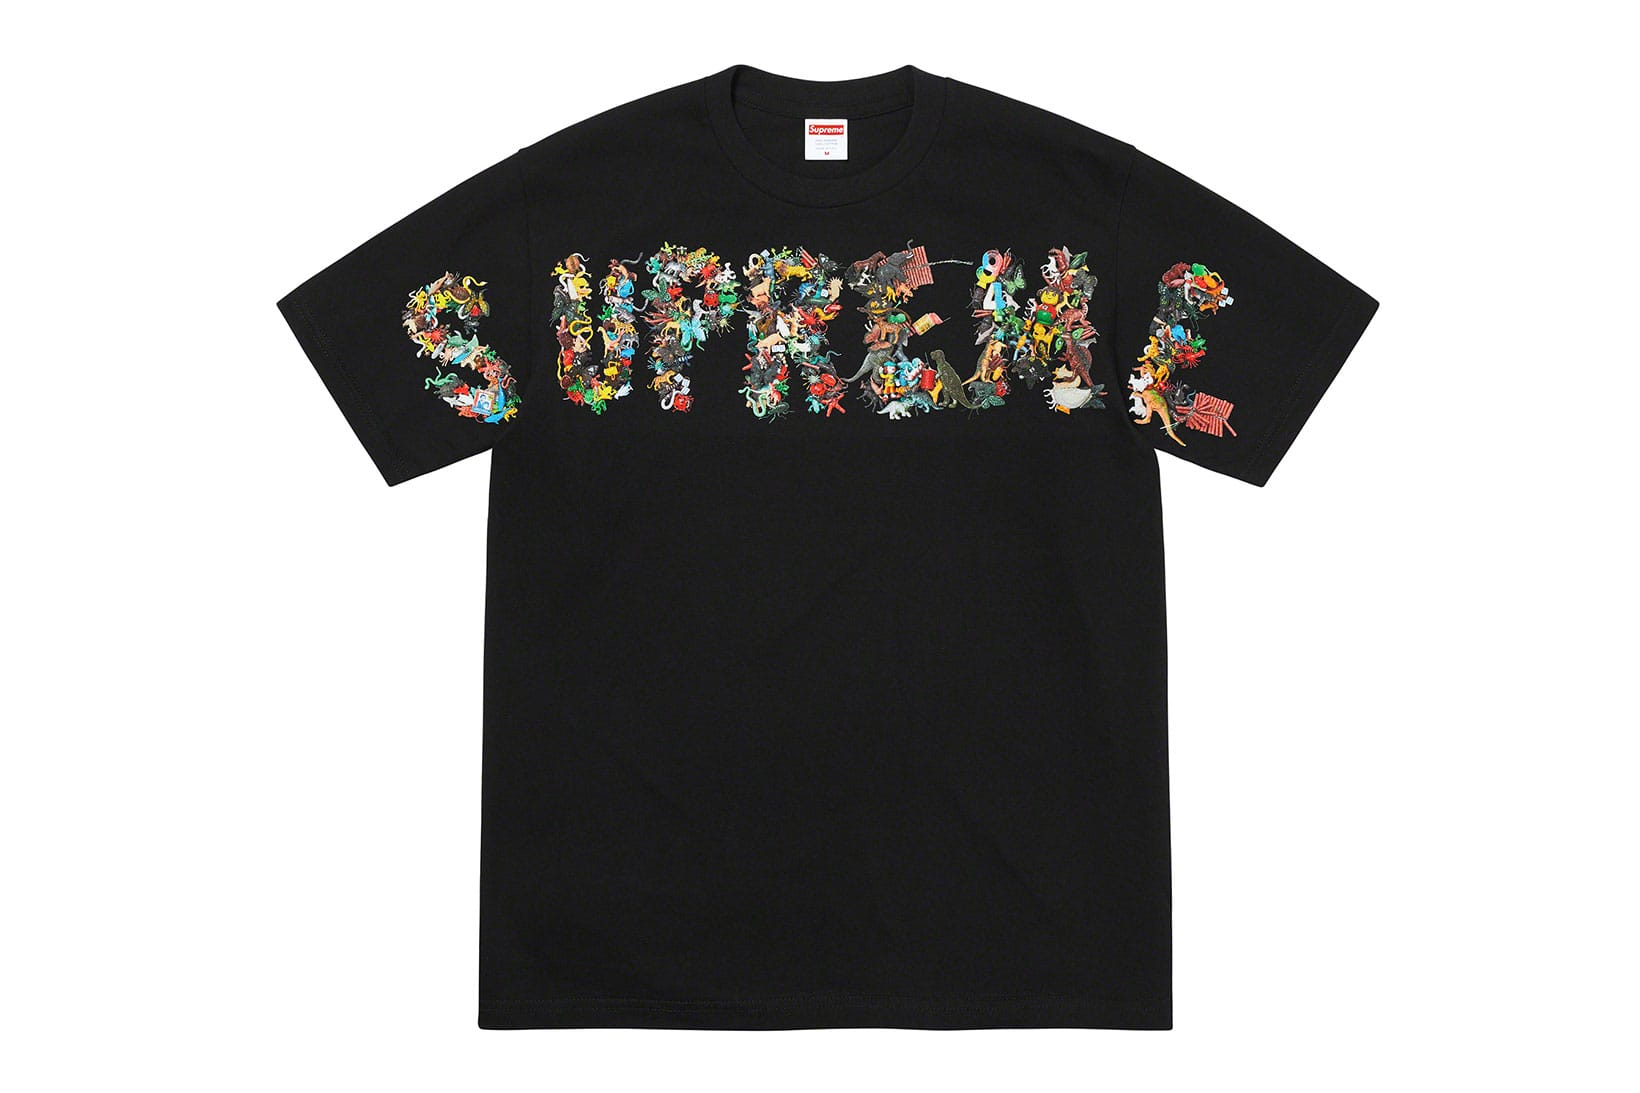 supreme nyc t shirt